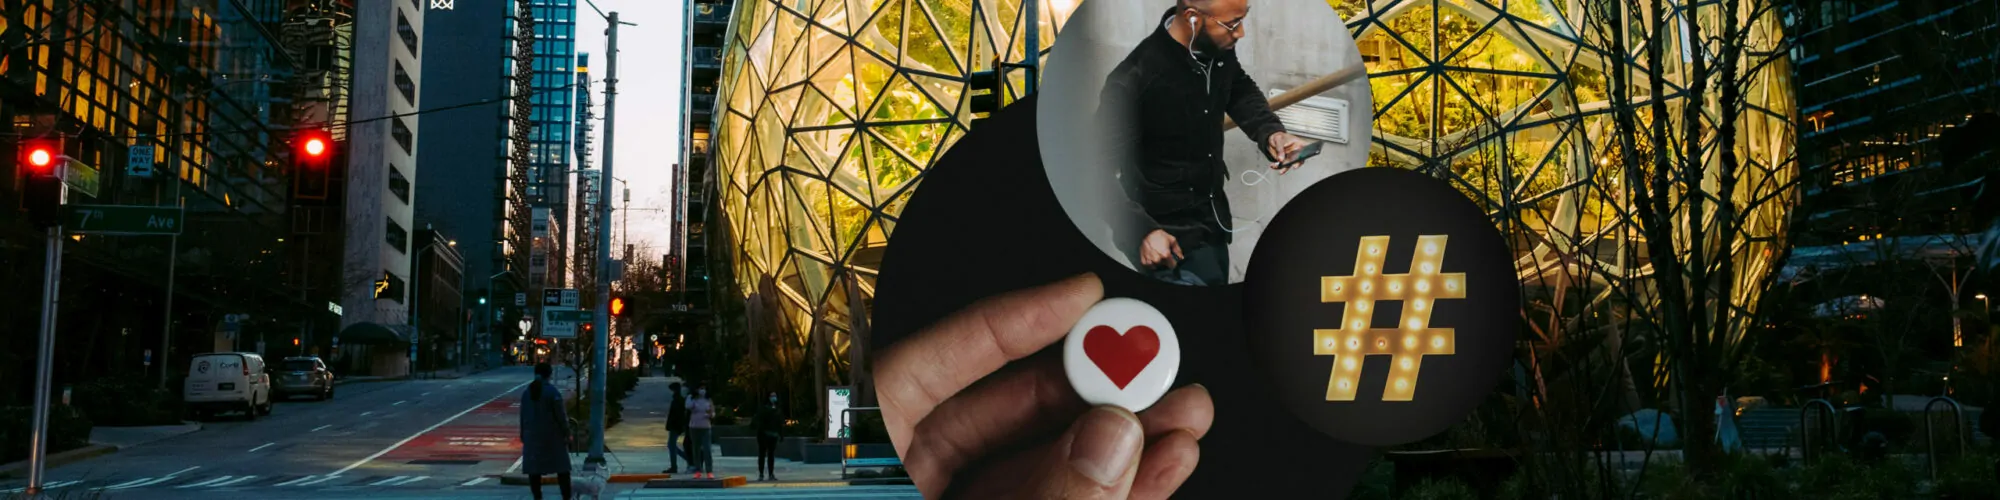 Bild der 7th Avenue mit drei Kreisen, Hand mit Herz-Button, Hashtag, Mann mit Smartphone, valantic Social Media